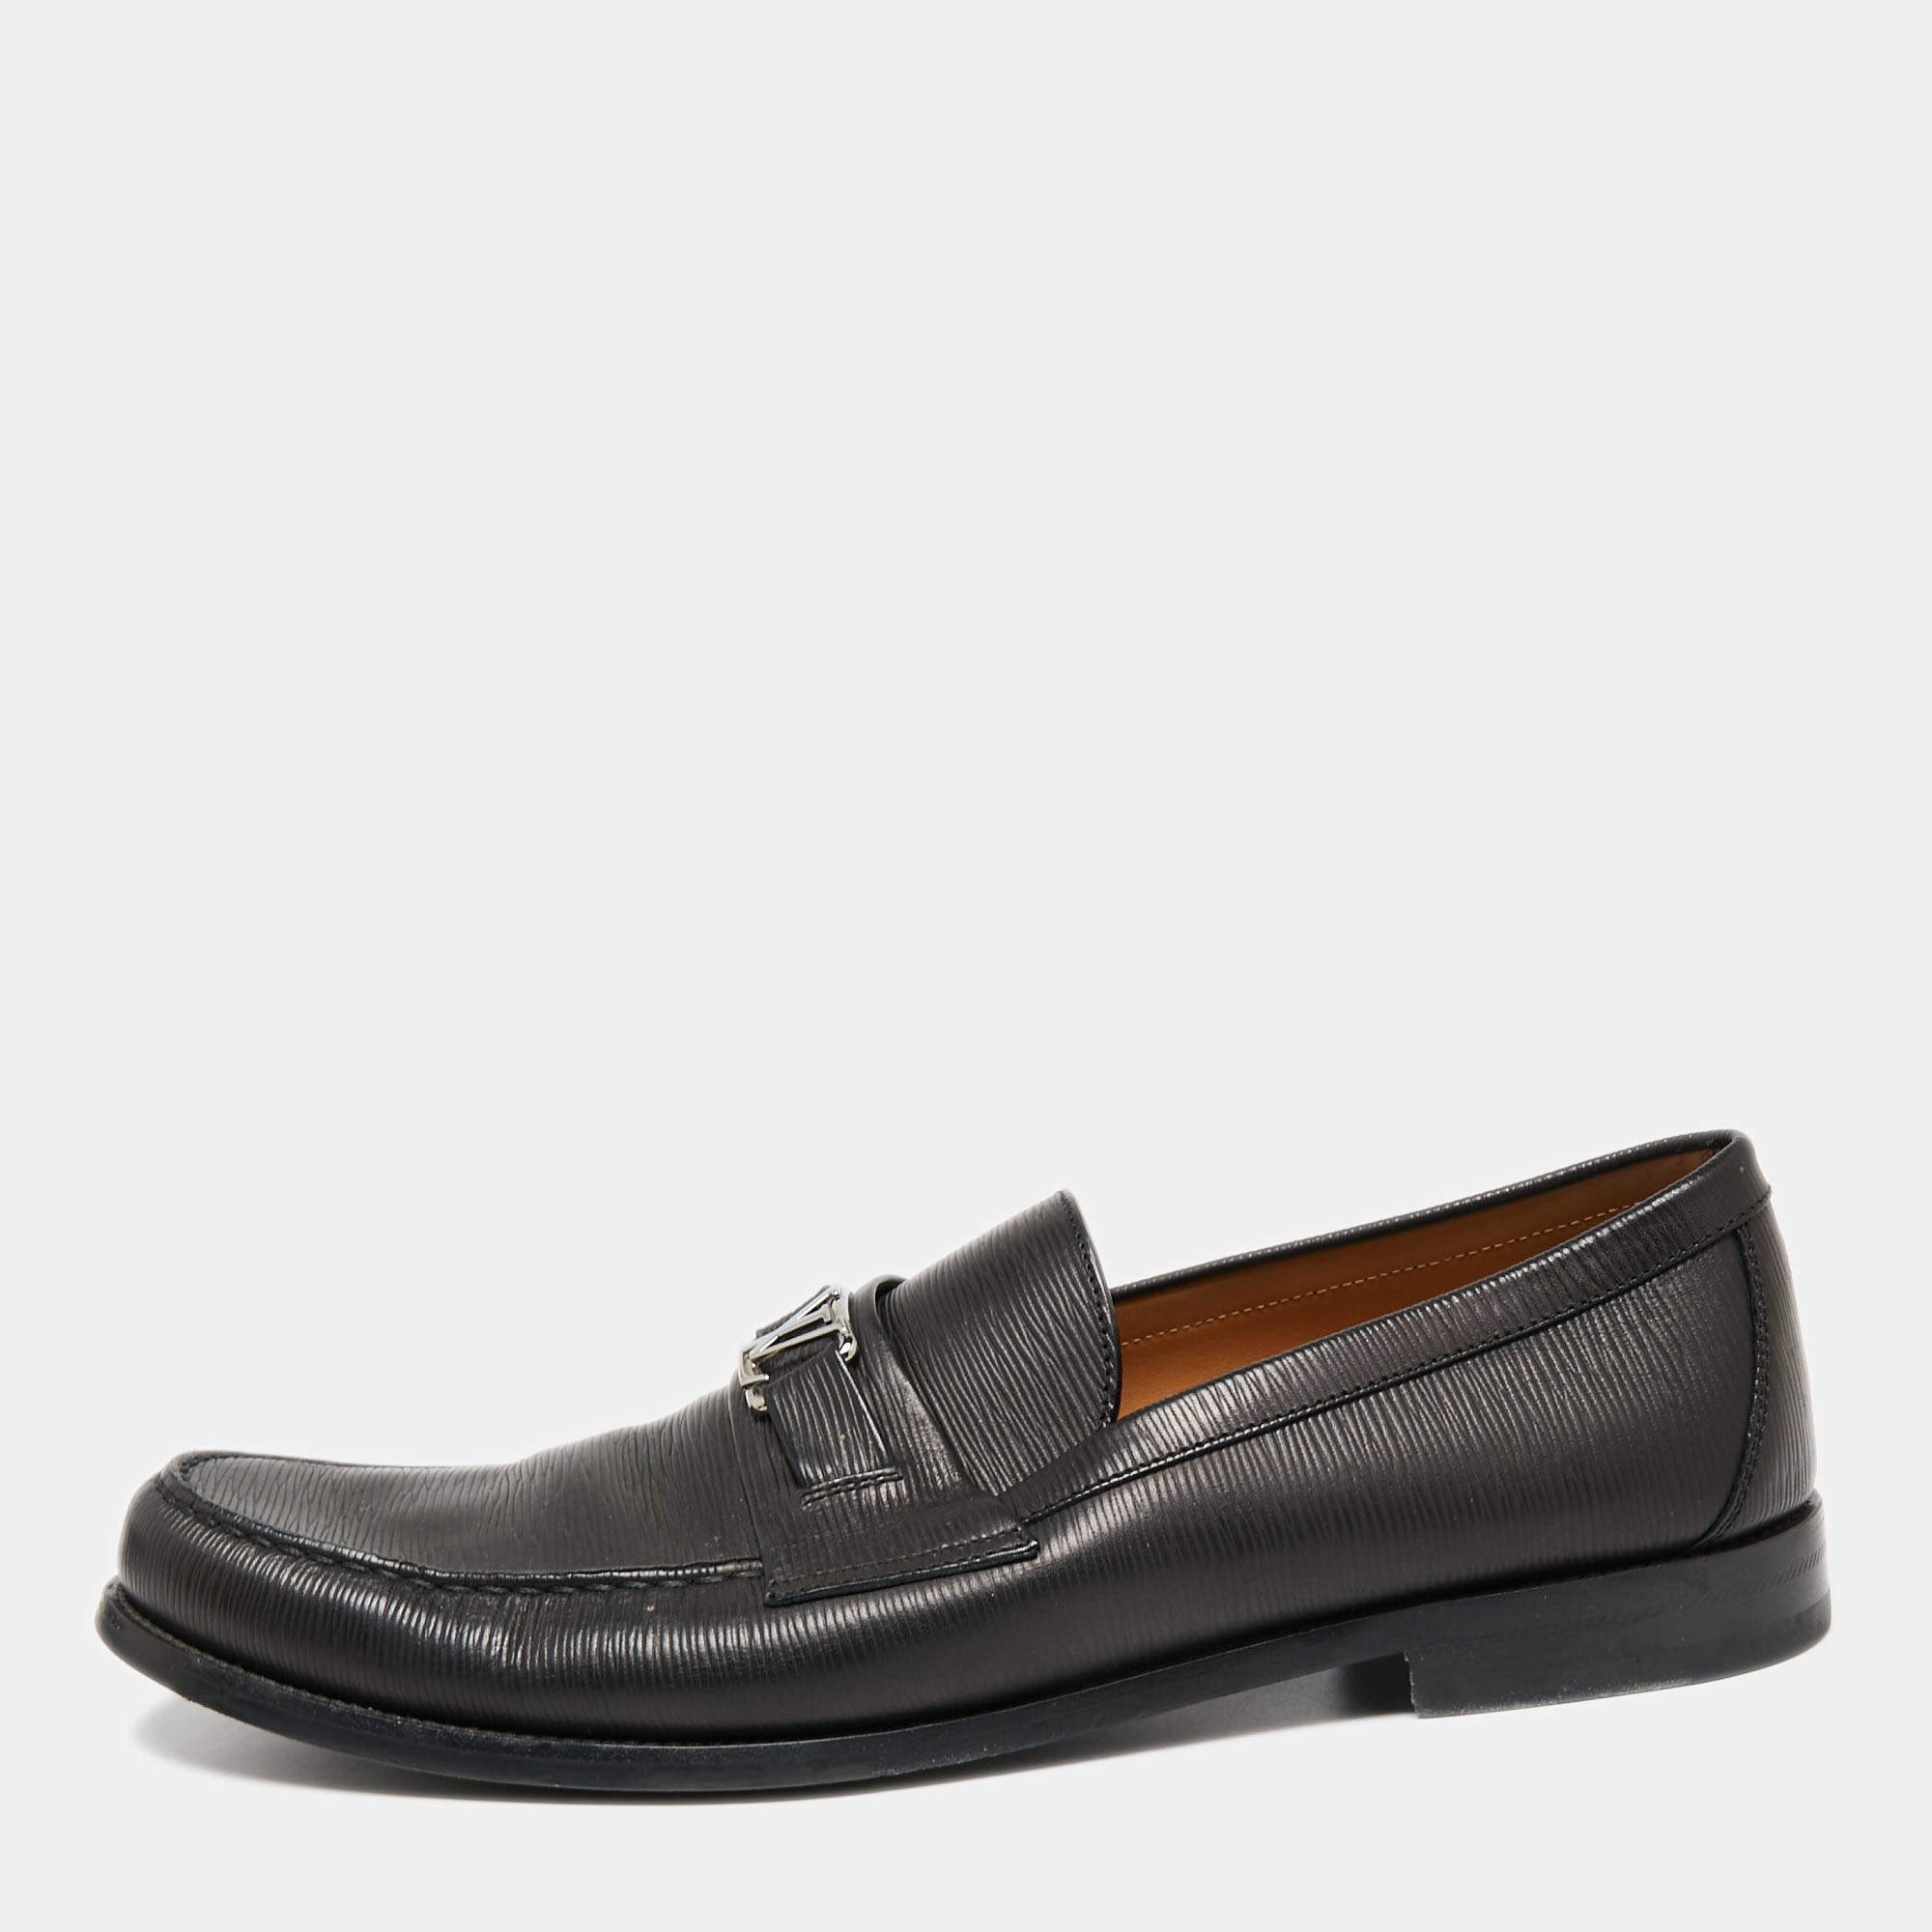 AUTHENTIC LOUIS VUITTON Major Loafer Mens Dress Shoes - Black